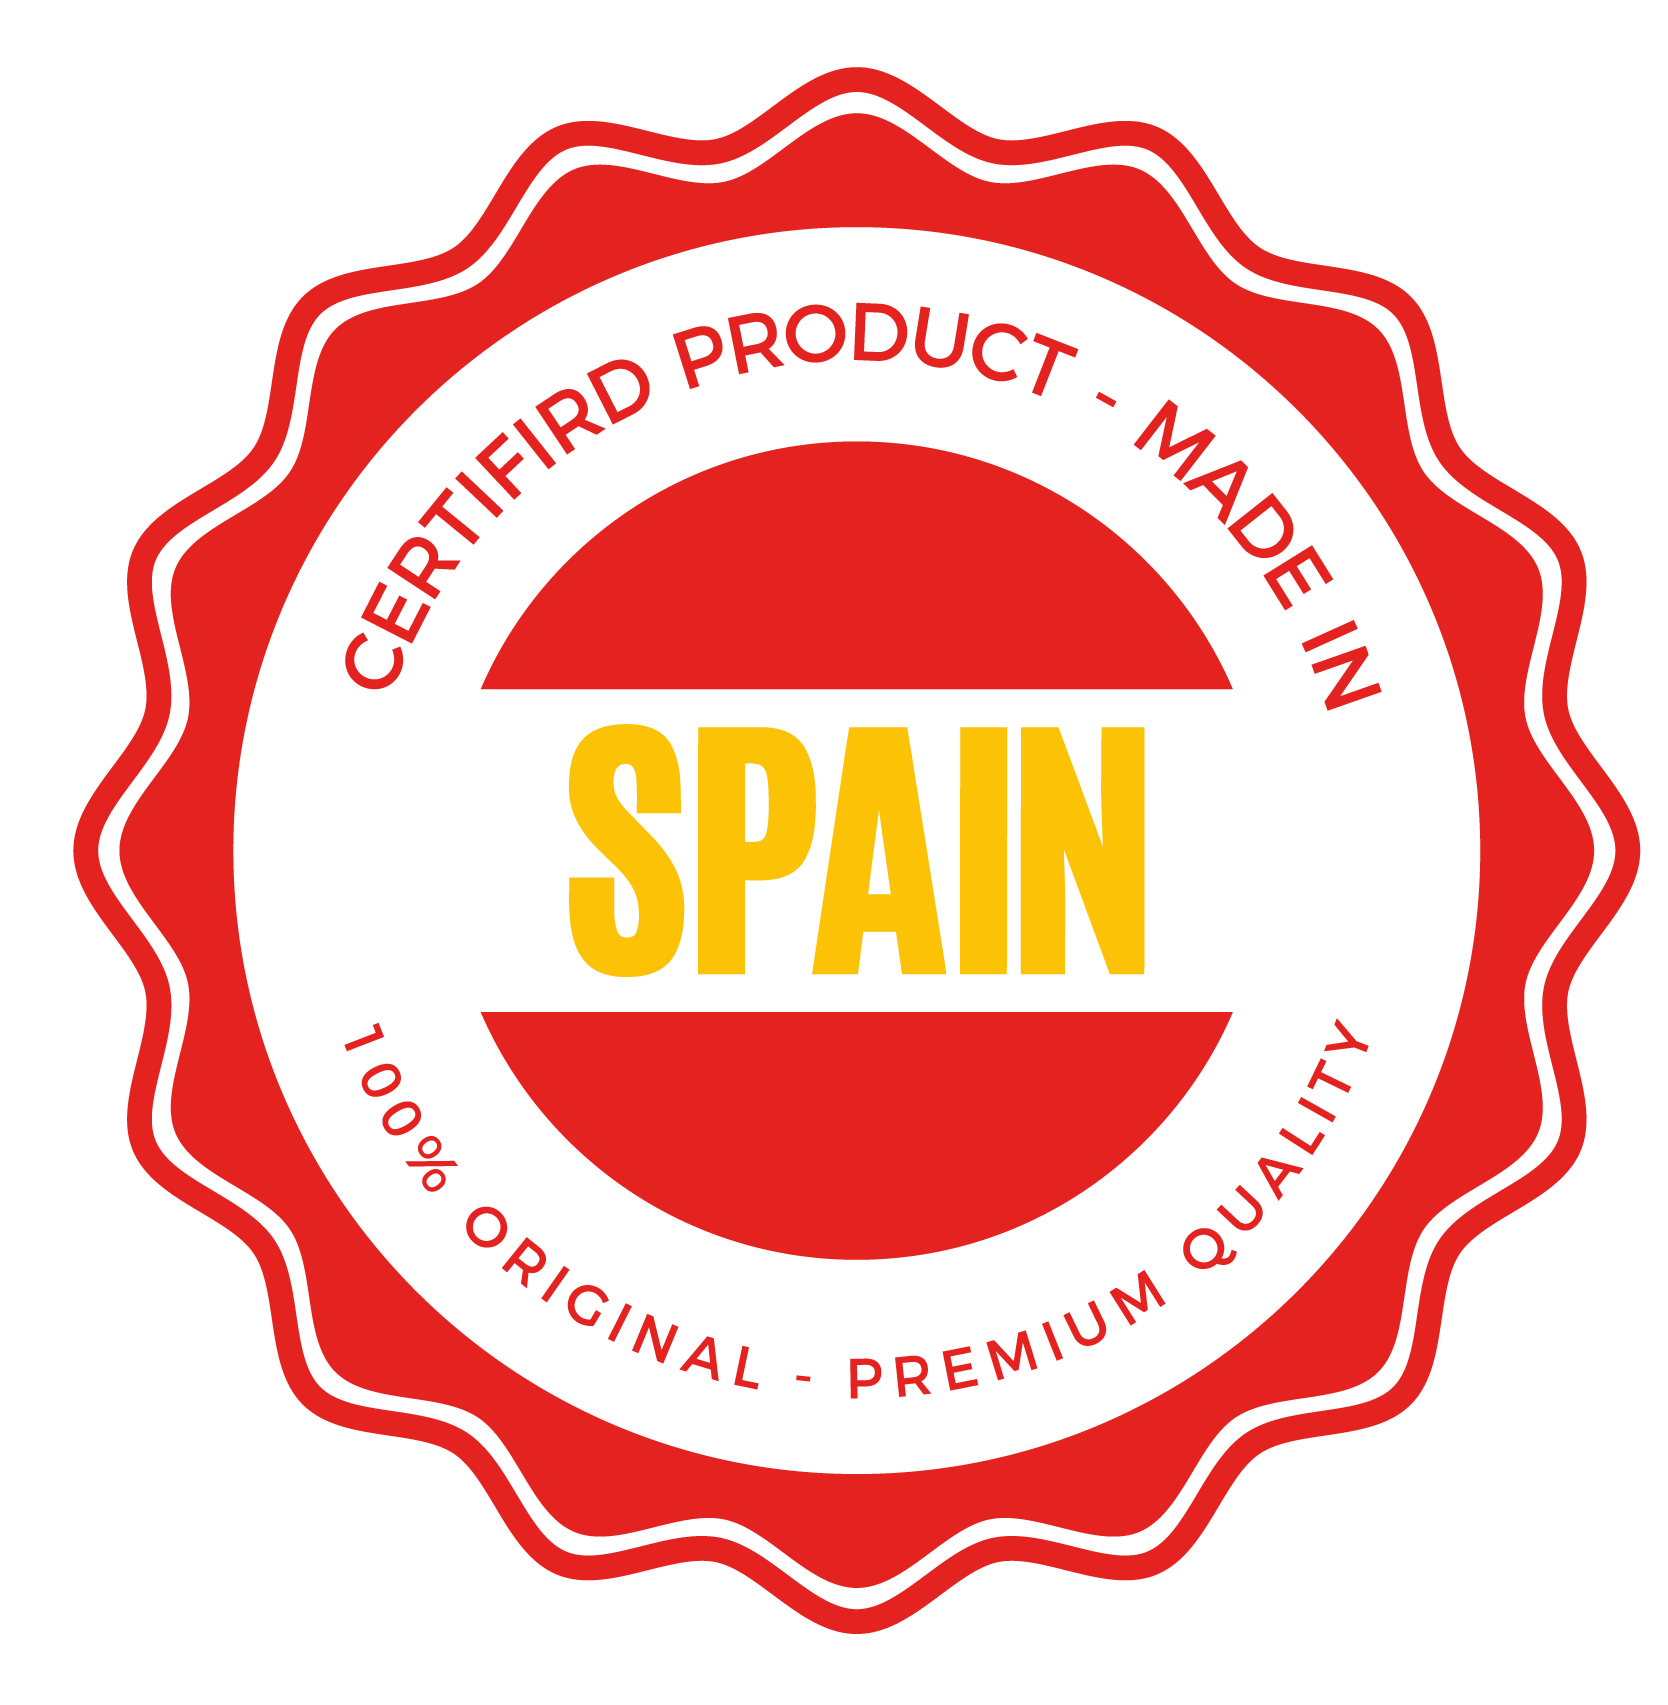 Sigillo di prodotto certificato realizzato in Spagna